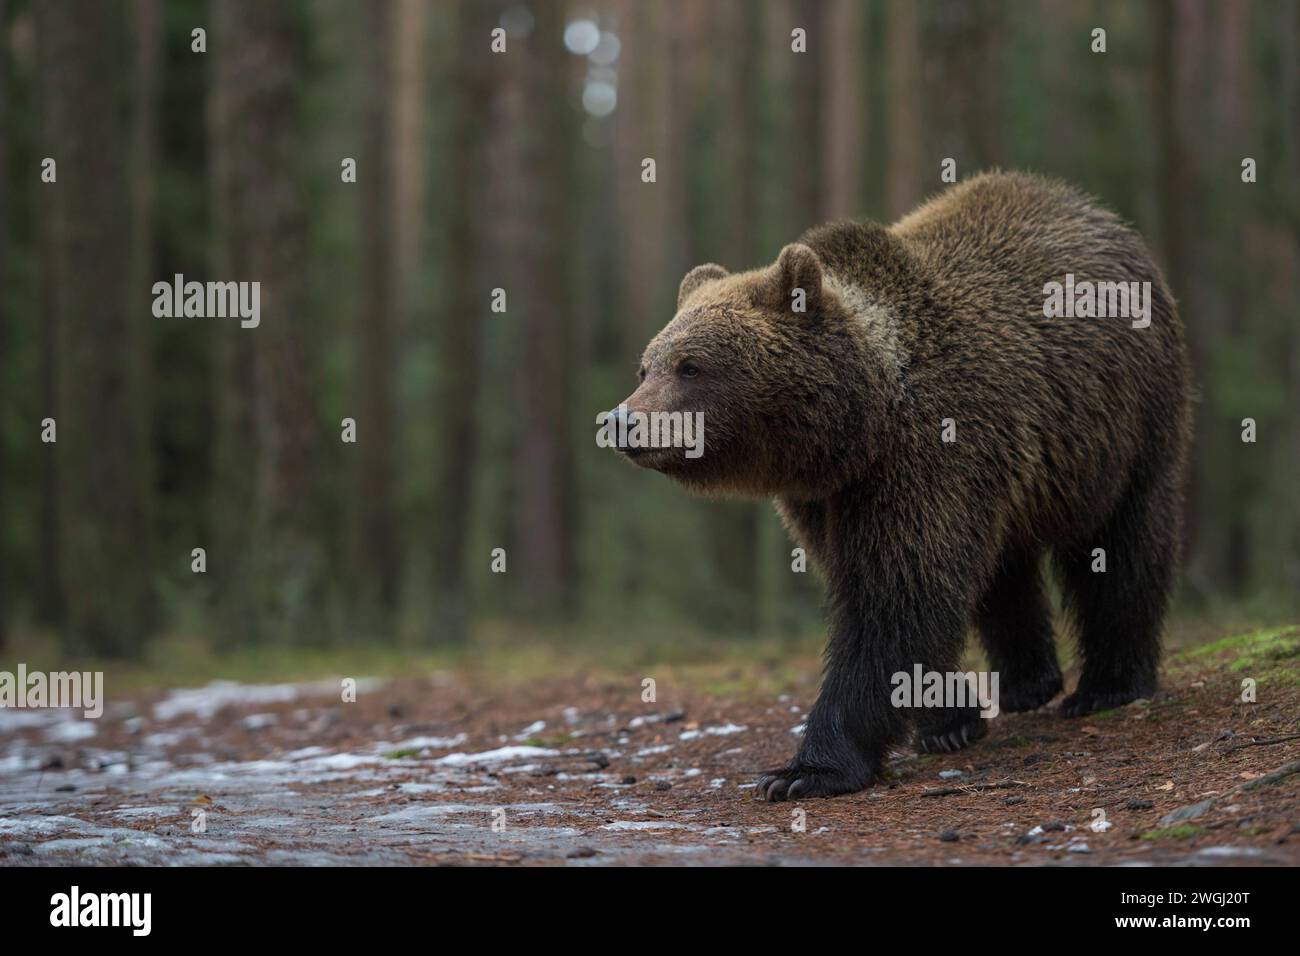 Europäischer Braunbaer / Eurasian Brown Bear  Ursus arctos  durchstreift einen Wald, läuft dabei spätabends auf eine Freifläche, Europas größtes Landraubtier. Europa Stock Photo